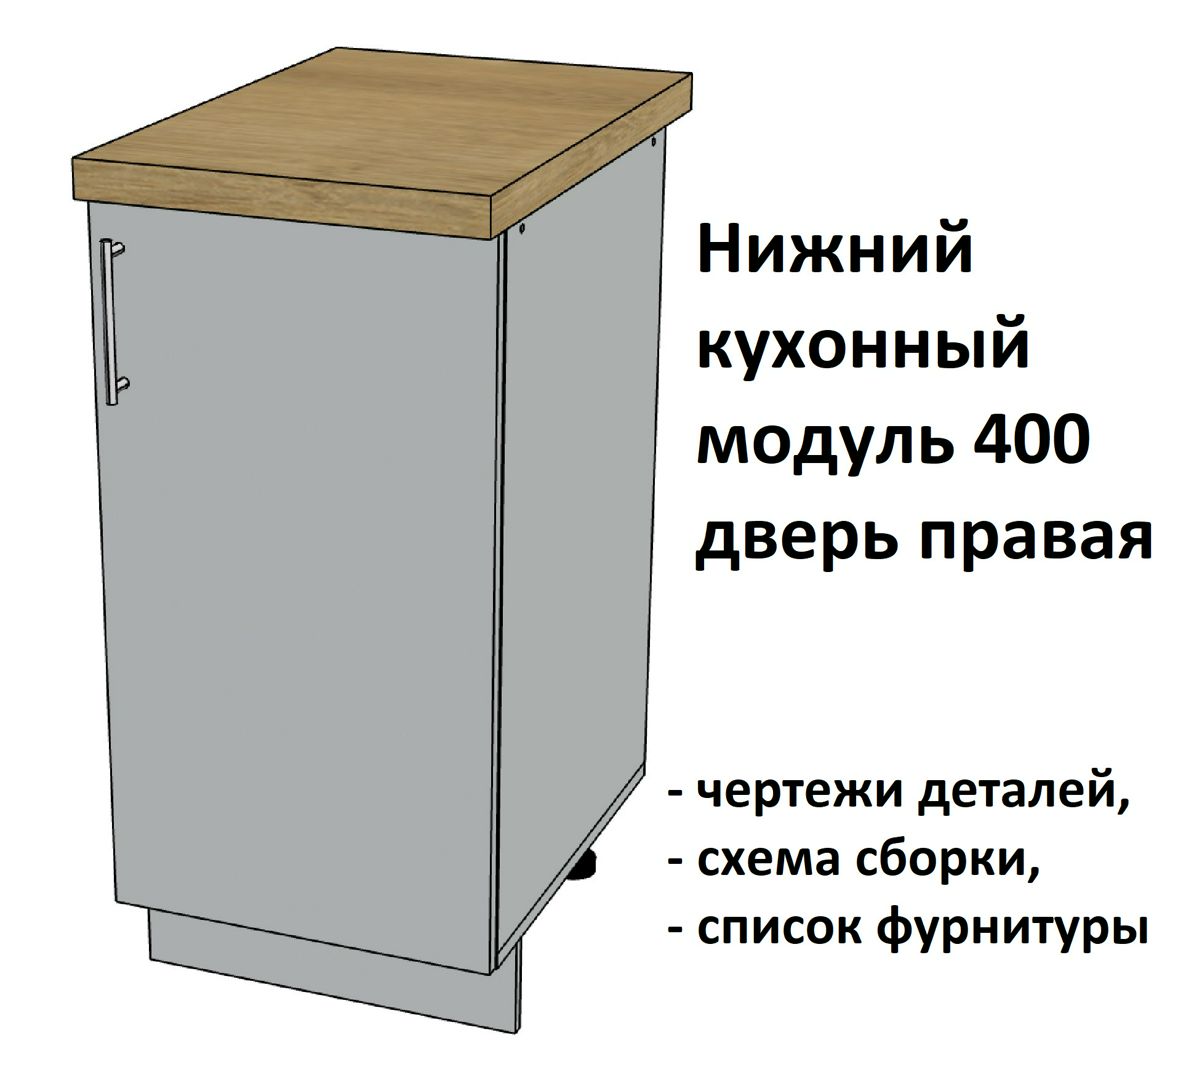 Нижний кухонный модуль 400, дверь правая - Комплект чертежей для изготовления корпусной мебели